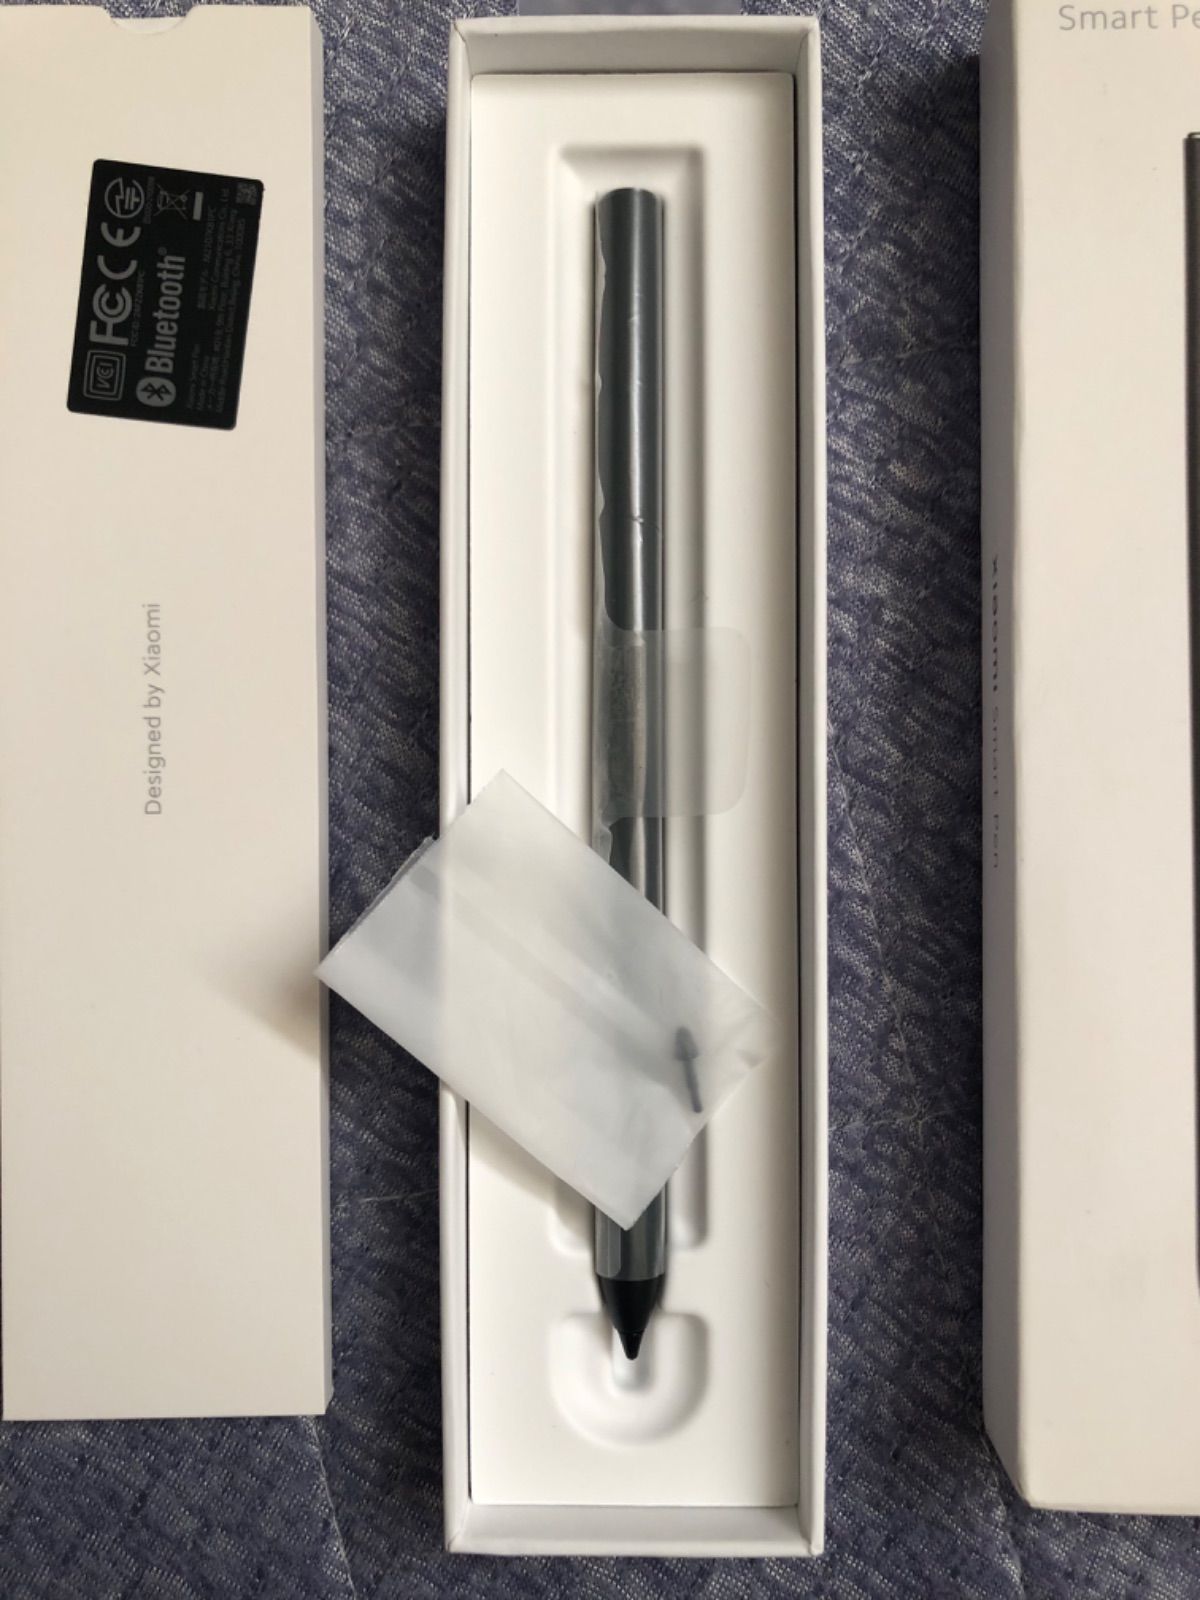 PC/タブレットXiaomi Smart Pen タブレット用タッチペン/スマートペン Pad